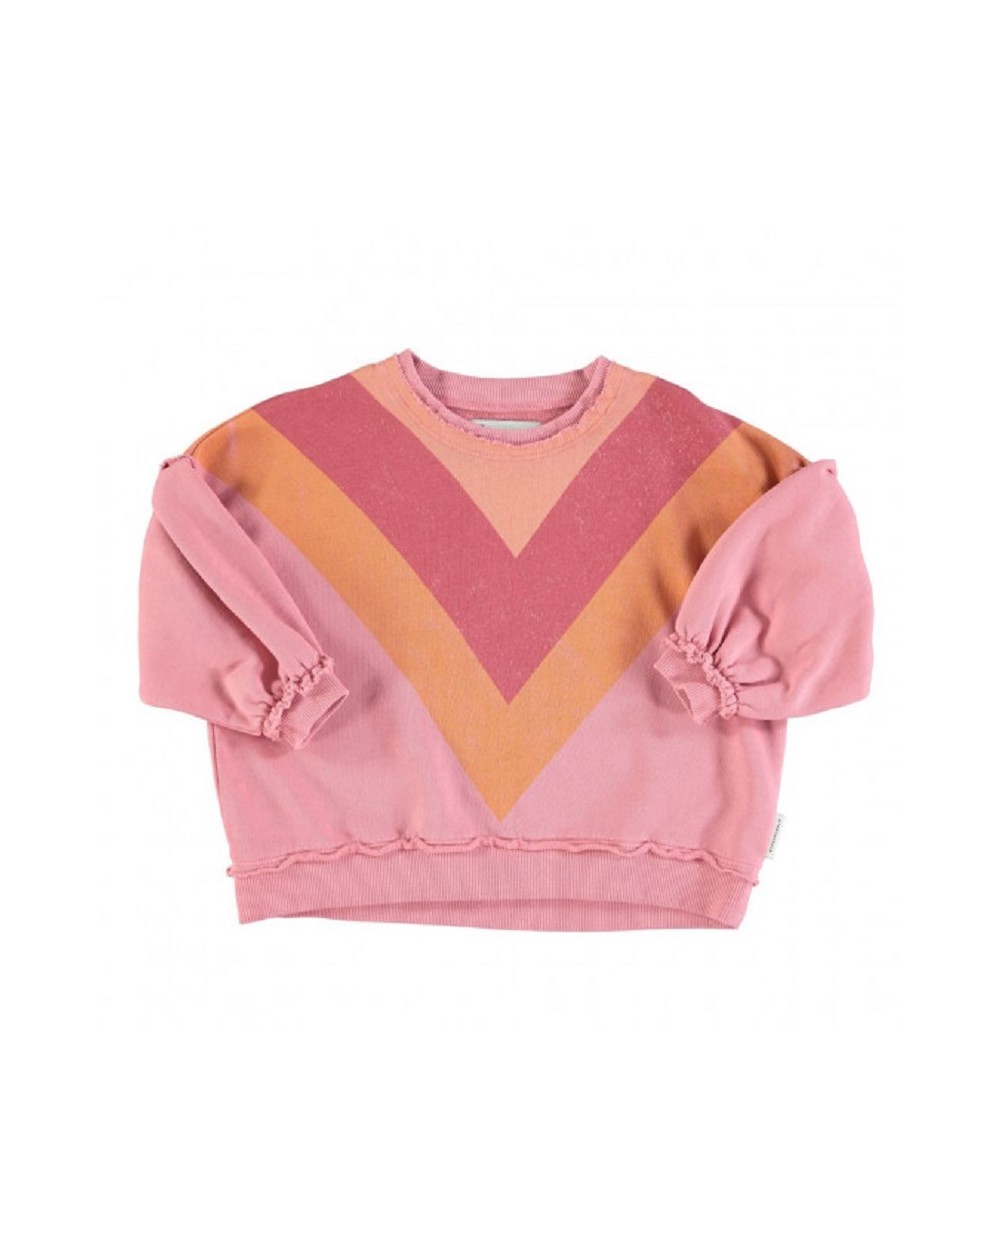 Piupiuchick - Sweat - Pink multicolor triangle print